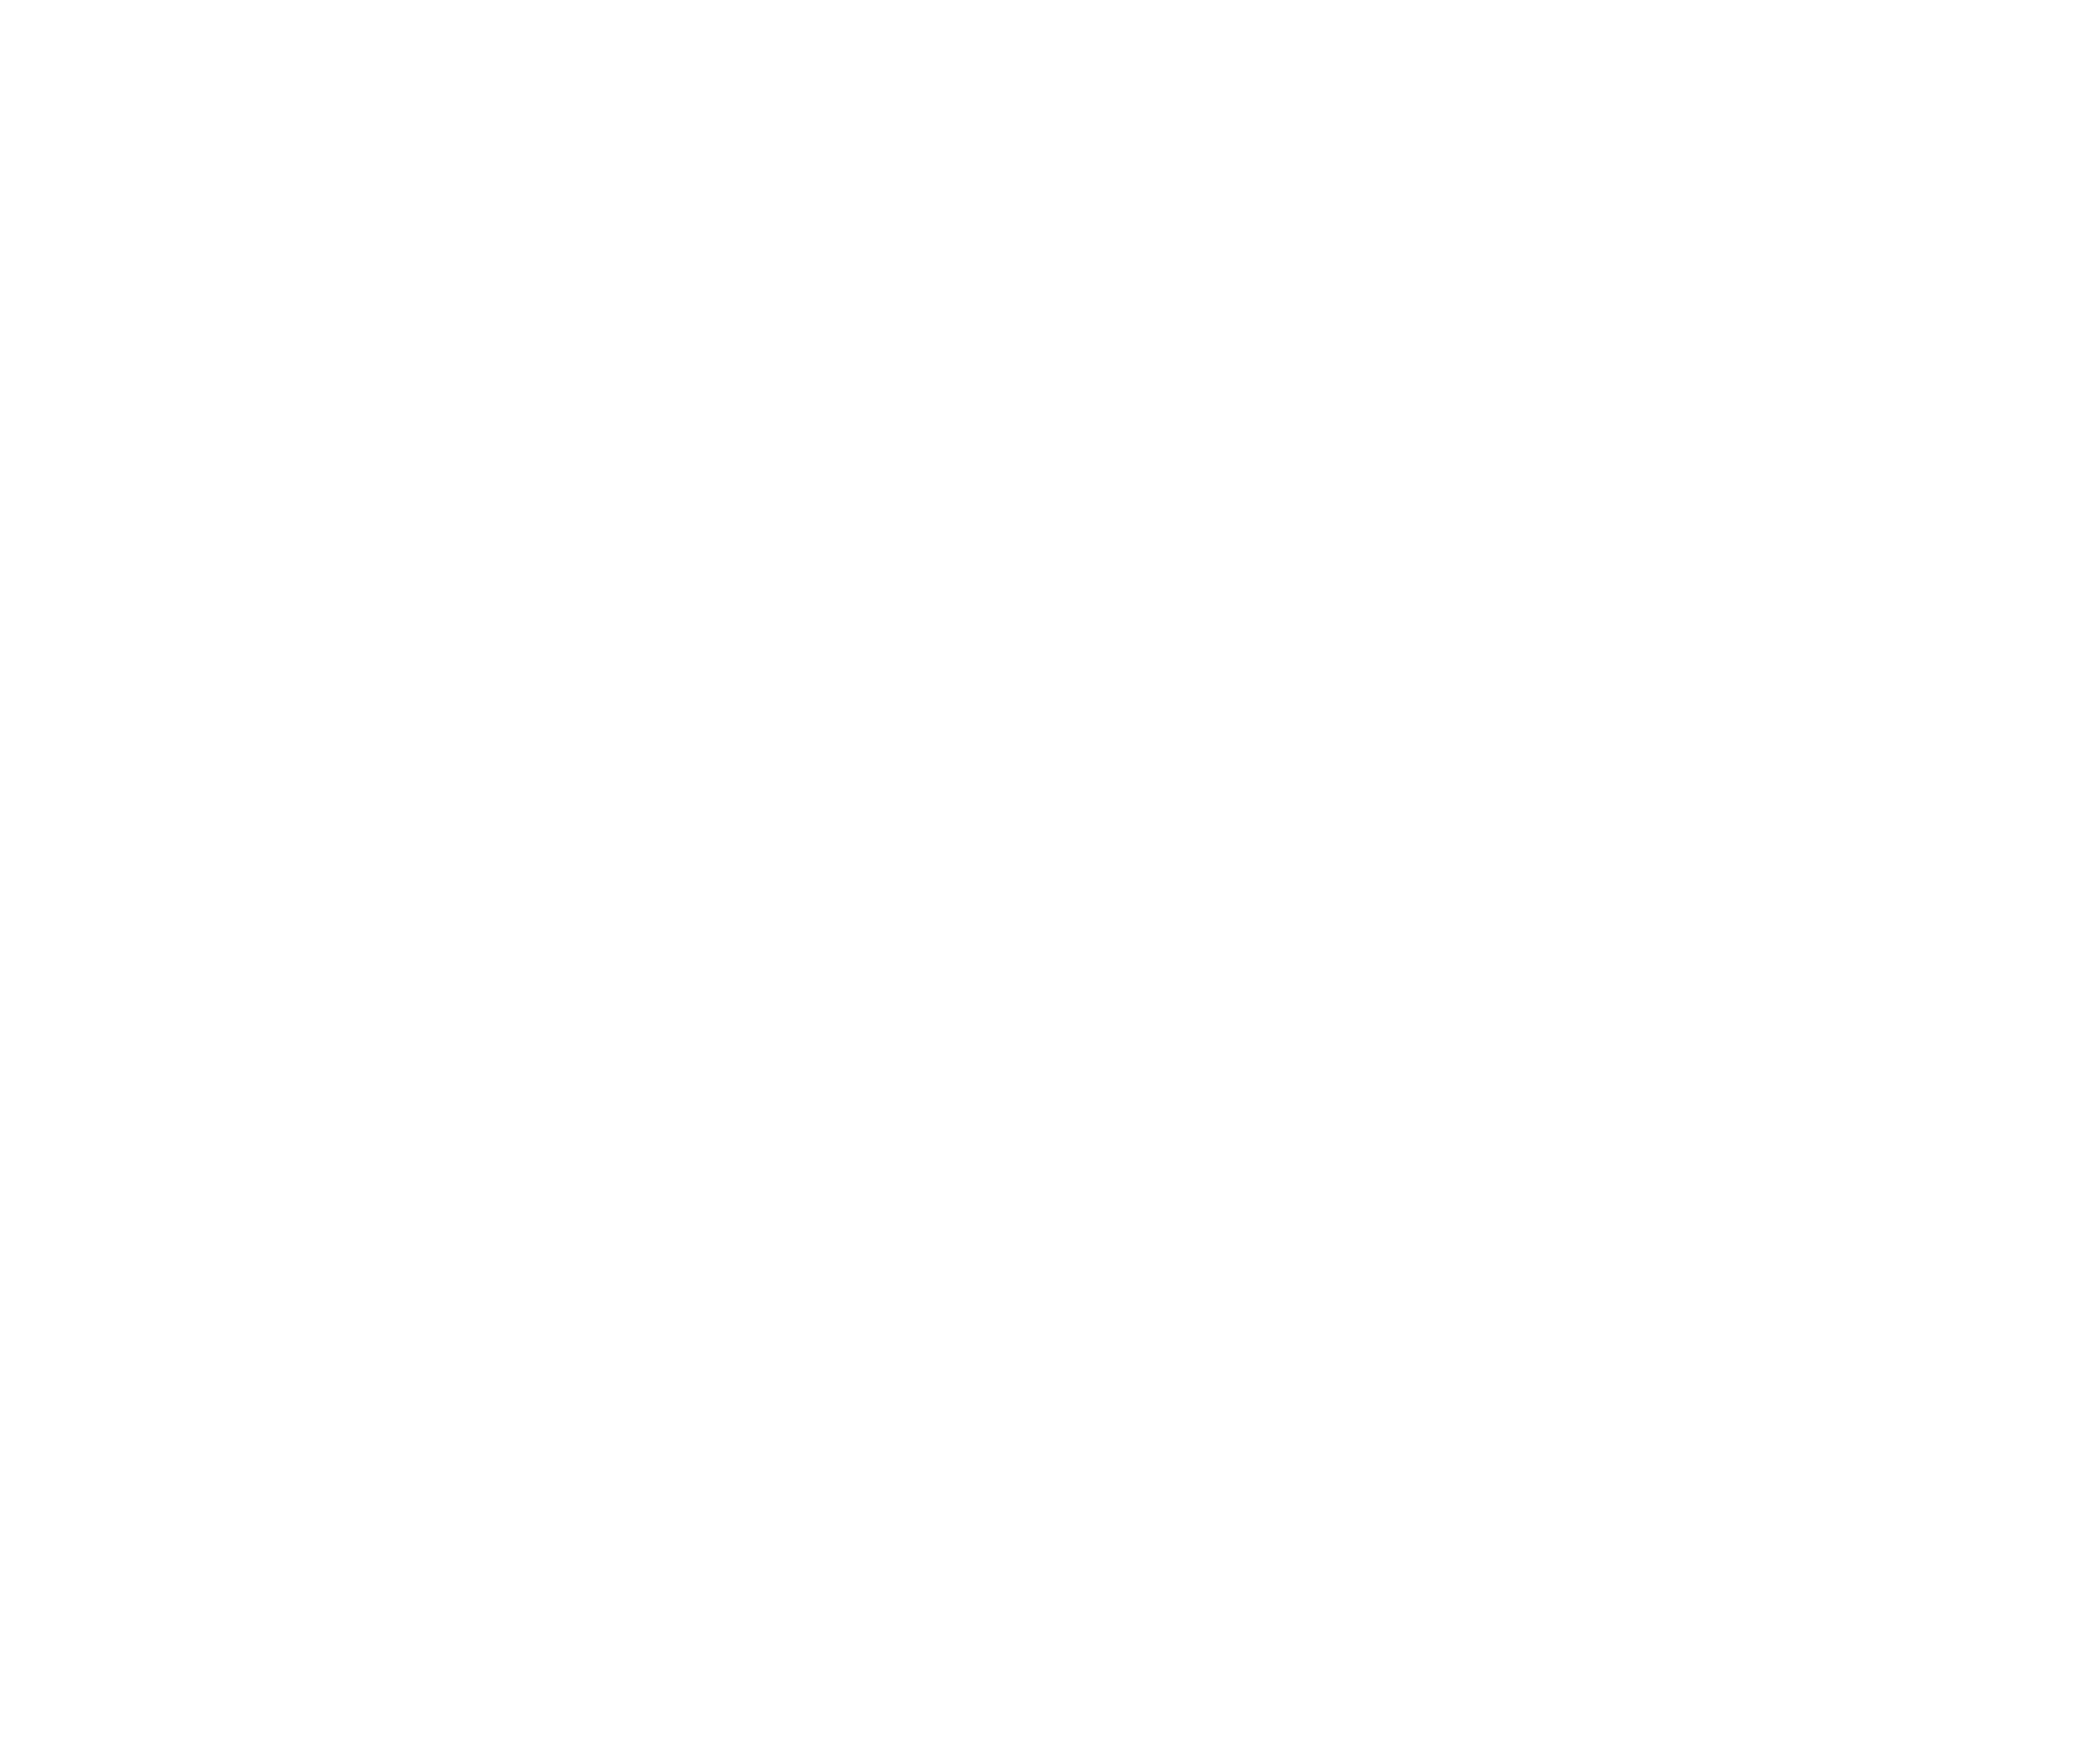 Fina Foods